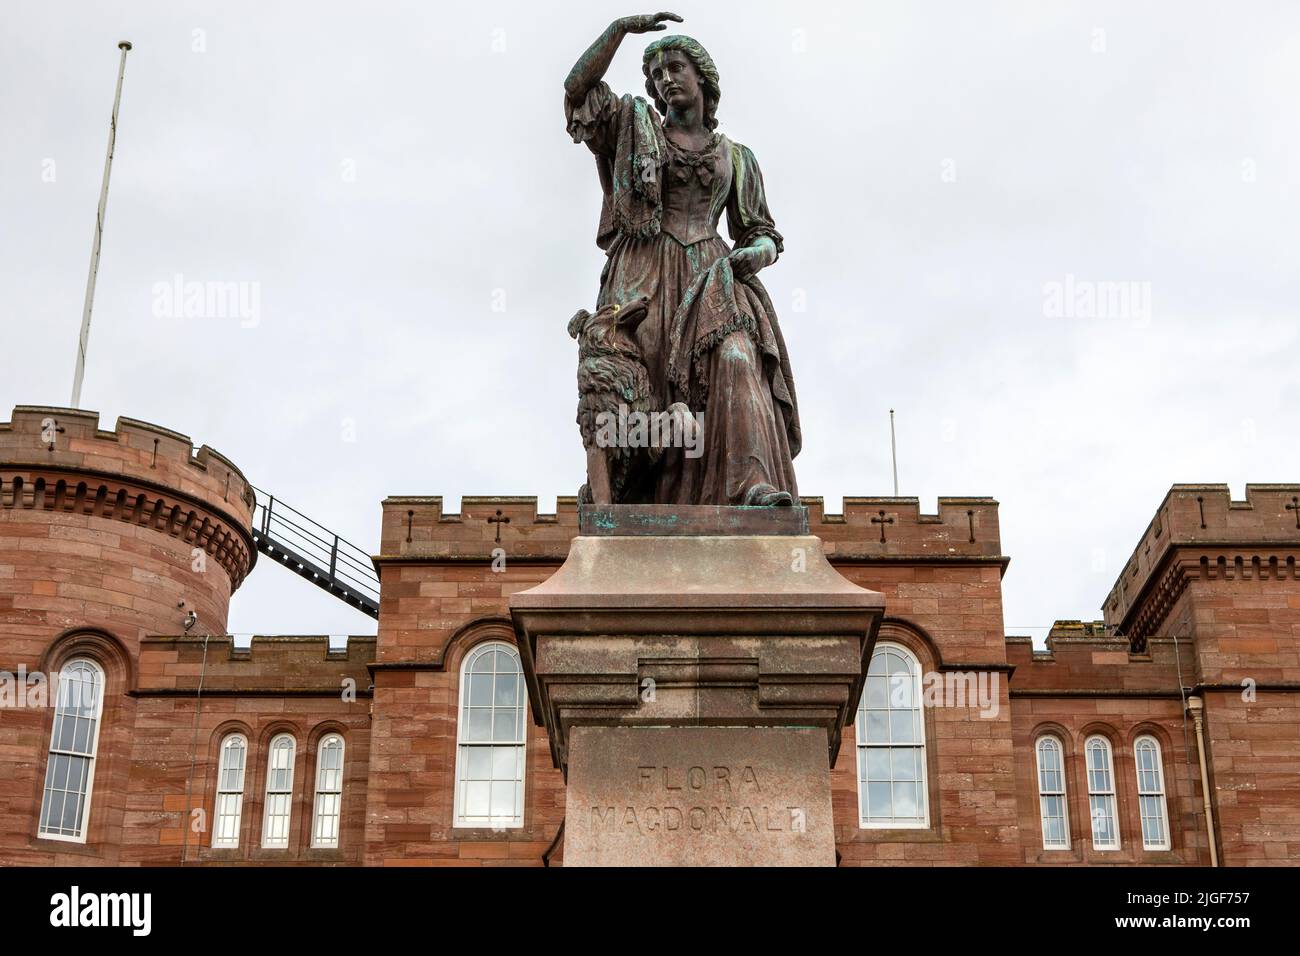 Statue de Flora MacDonald qui a aidé Charles Edward Stuart à échapper aux troupes gouvernementales après la bataille de Culloden en 1746, avec le château d'Inverness dans le Banque D'Images